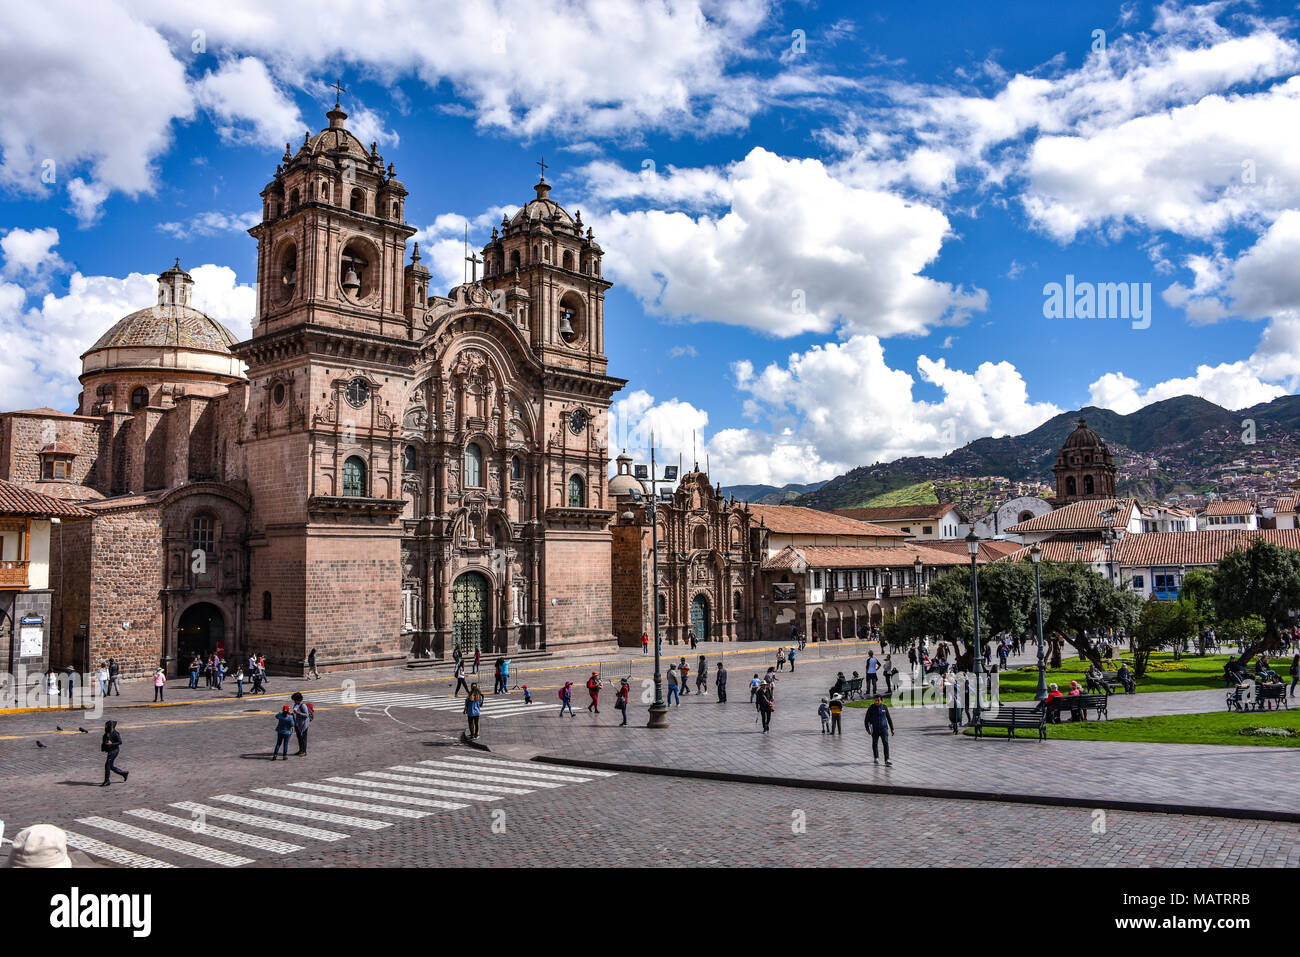 March 30, 2018 - Cusco, Peru: Plaza de Armas and Church of the Society of Jesus or Iglesia de la Compania de Jesus Stock Photo